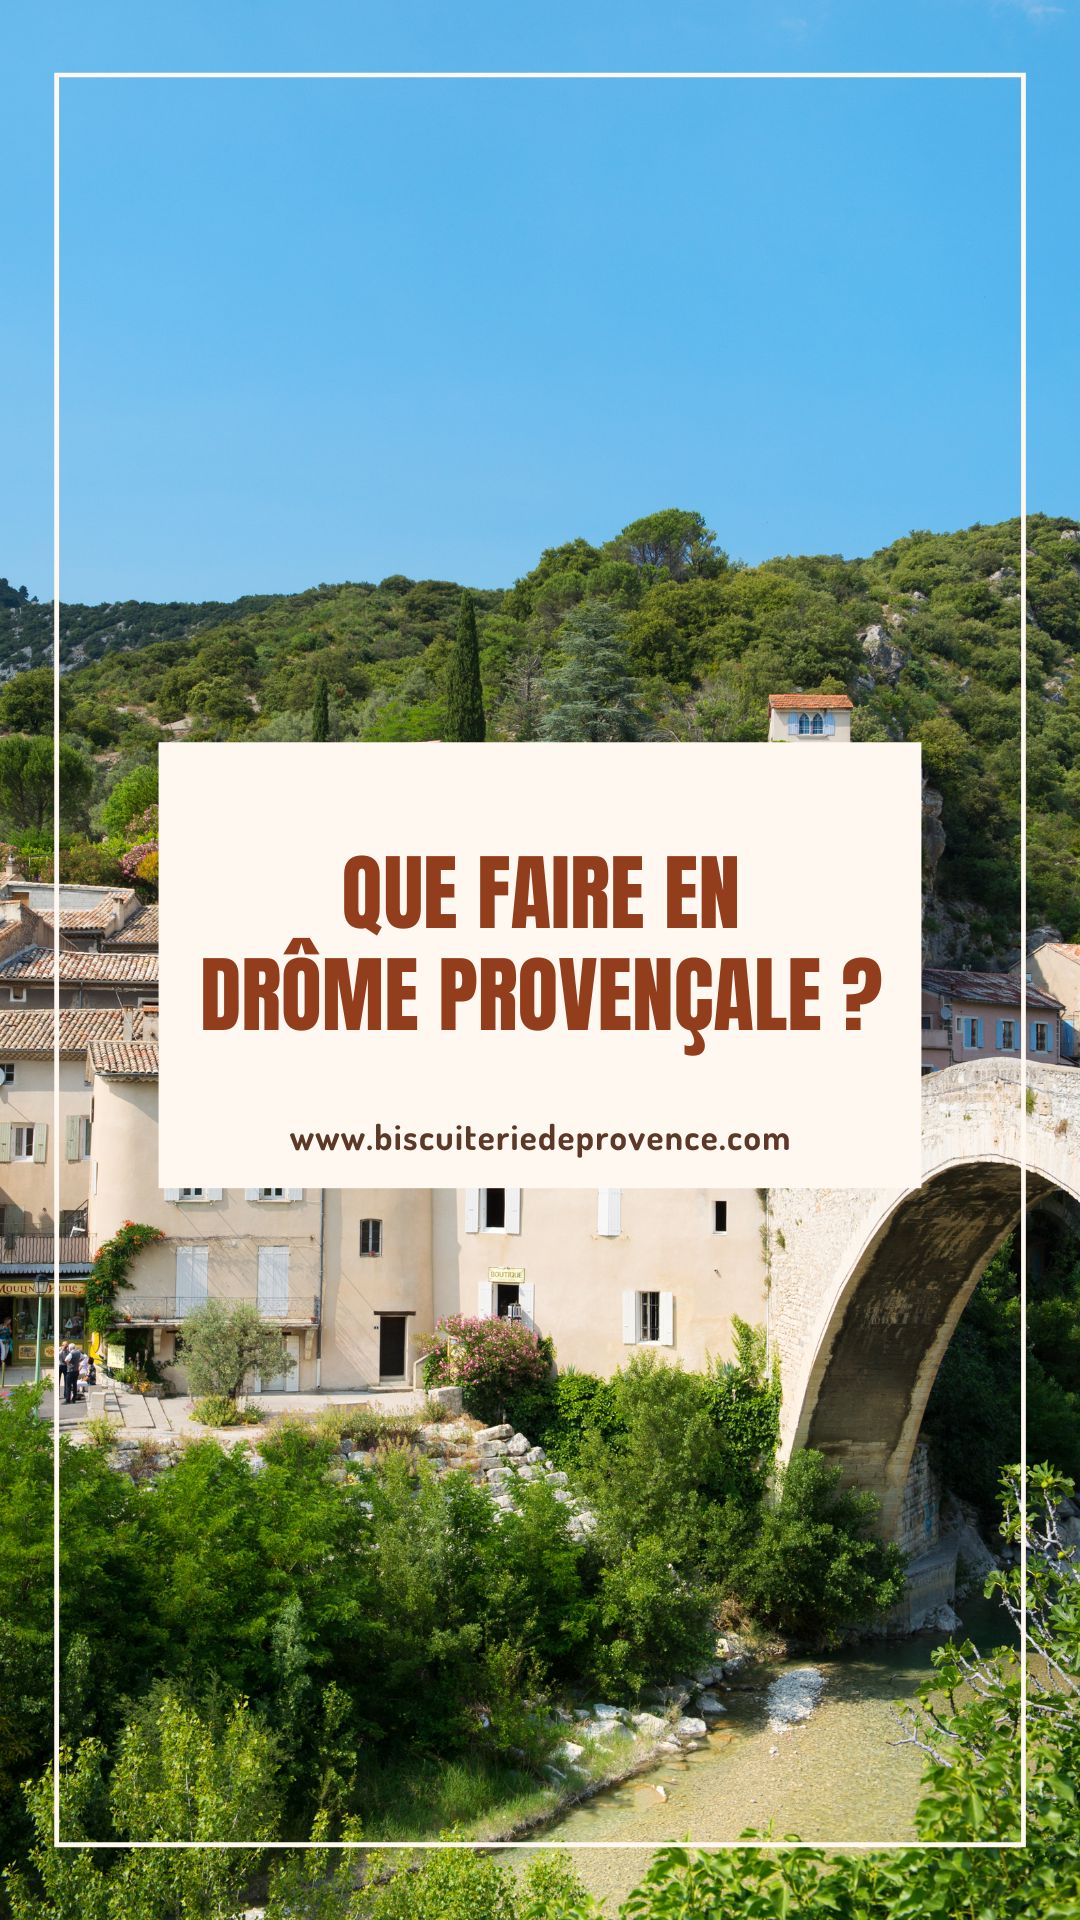 A la découverte de la Drôme Provençale